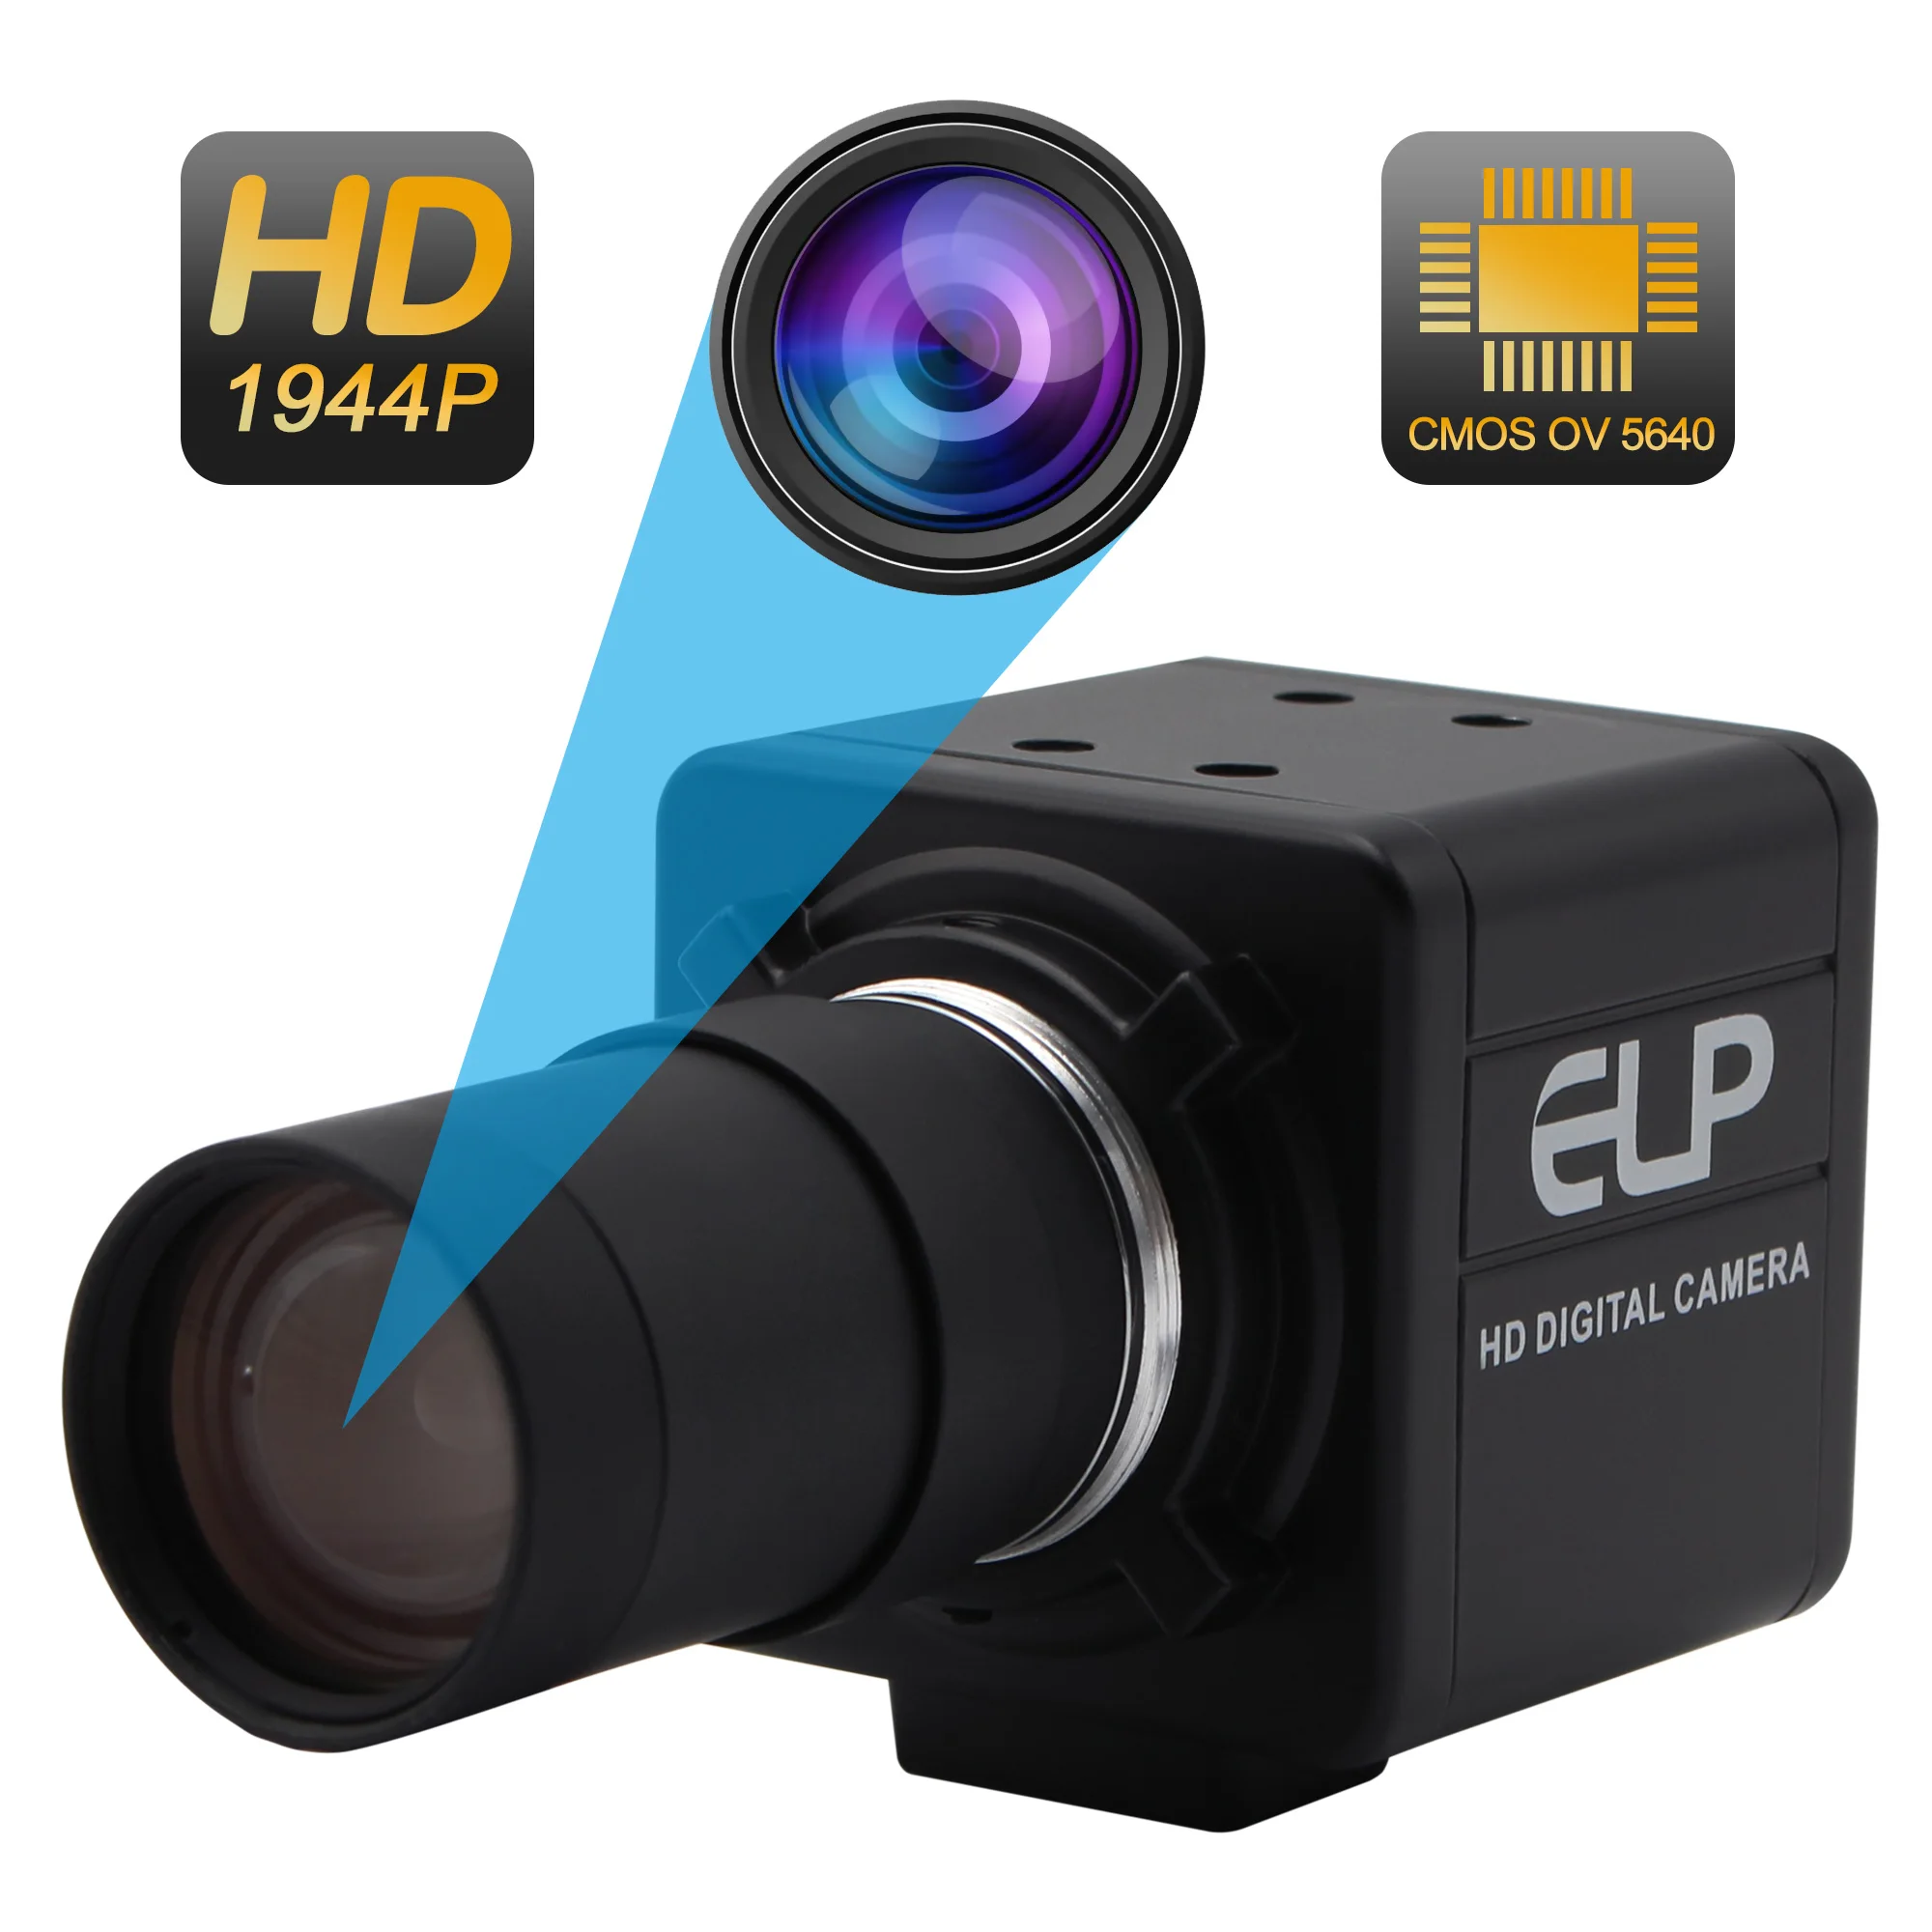 Фото 5MP USB 2.0 Camera High Resolution CMOS OV5640 Mini Varifocal CS Lens UVC CCTV Industrial Webcam for Video Conference | Безопасность и